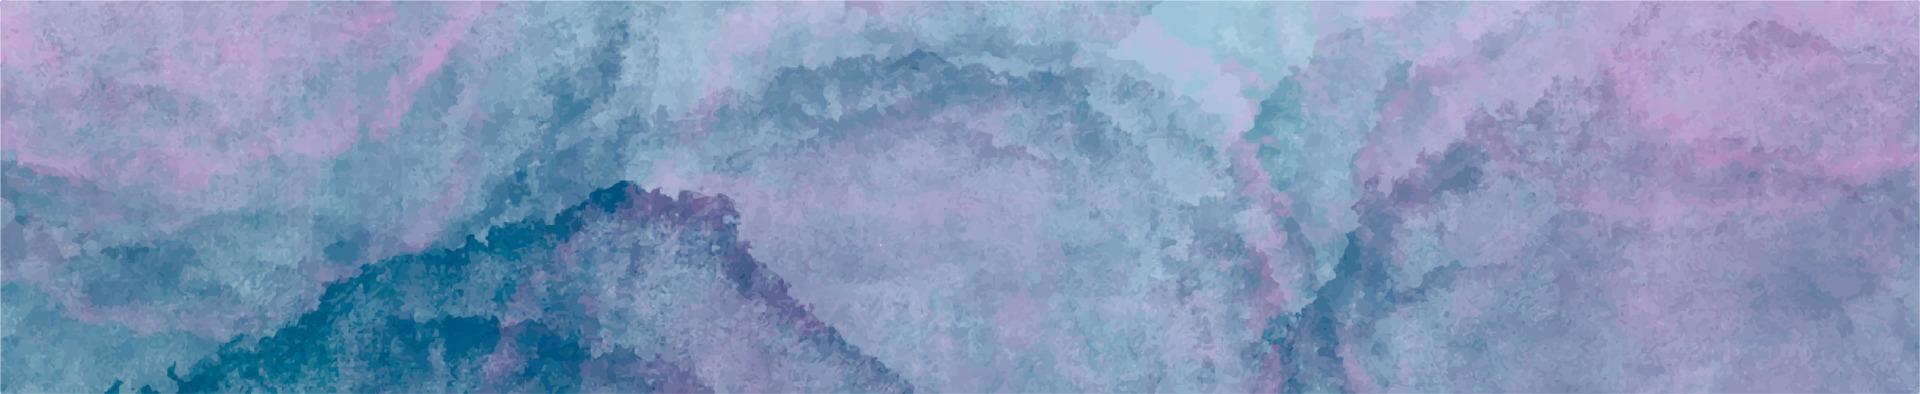 sfondo vettoriale acquerello viola blu. sfondo di macchia quadrata di pittura a mano astratta